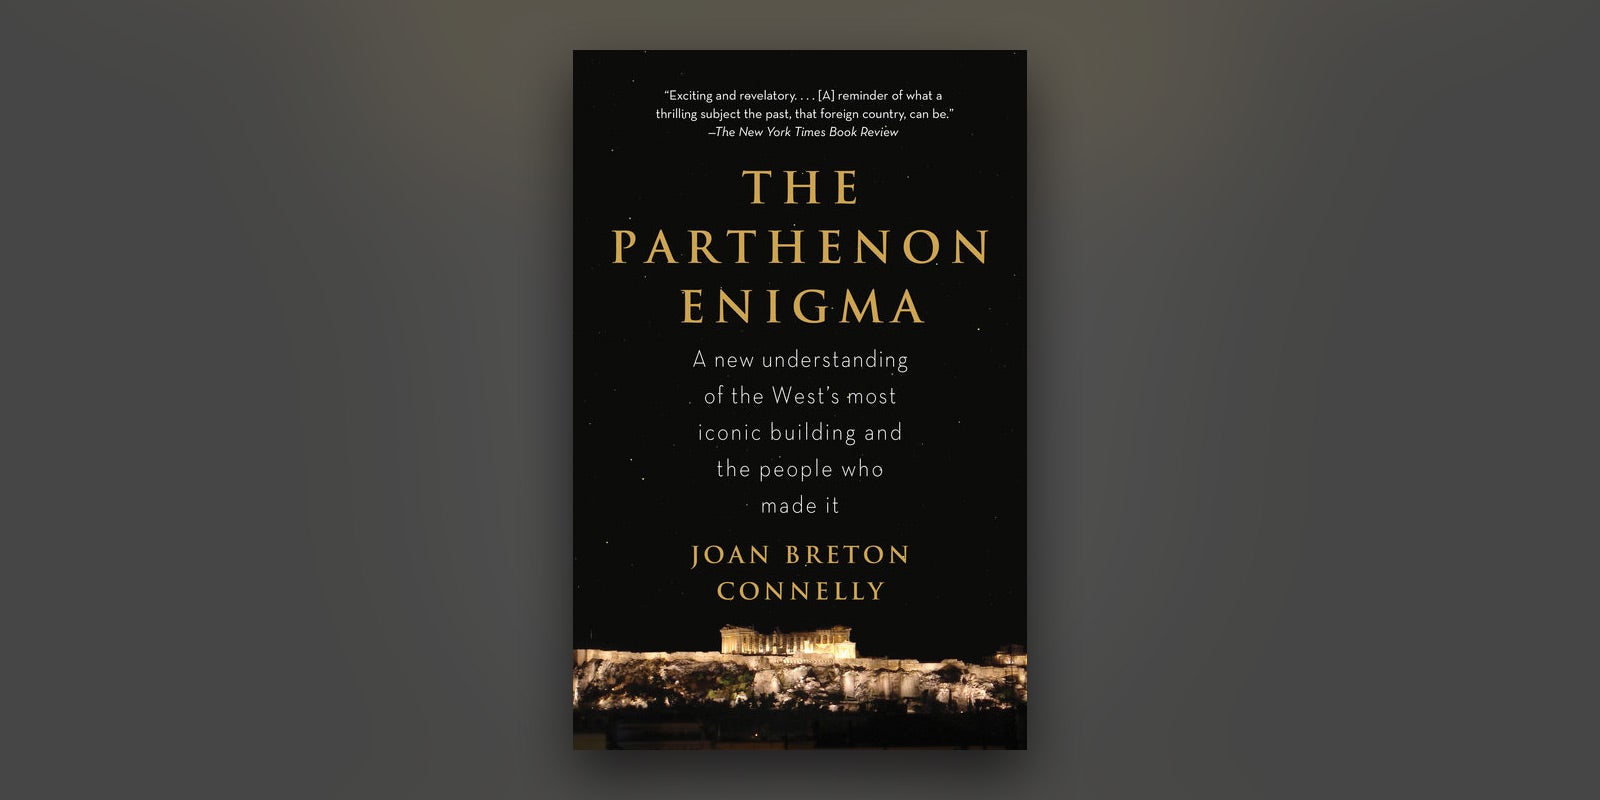 The Parthenon Enigma wins Phi Beta Kappa Book Award